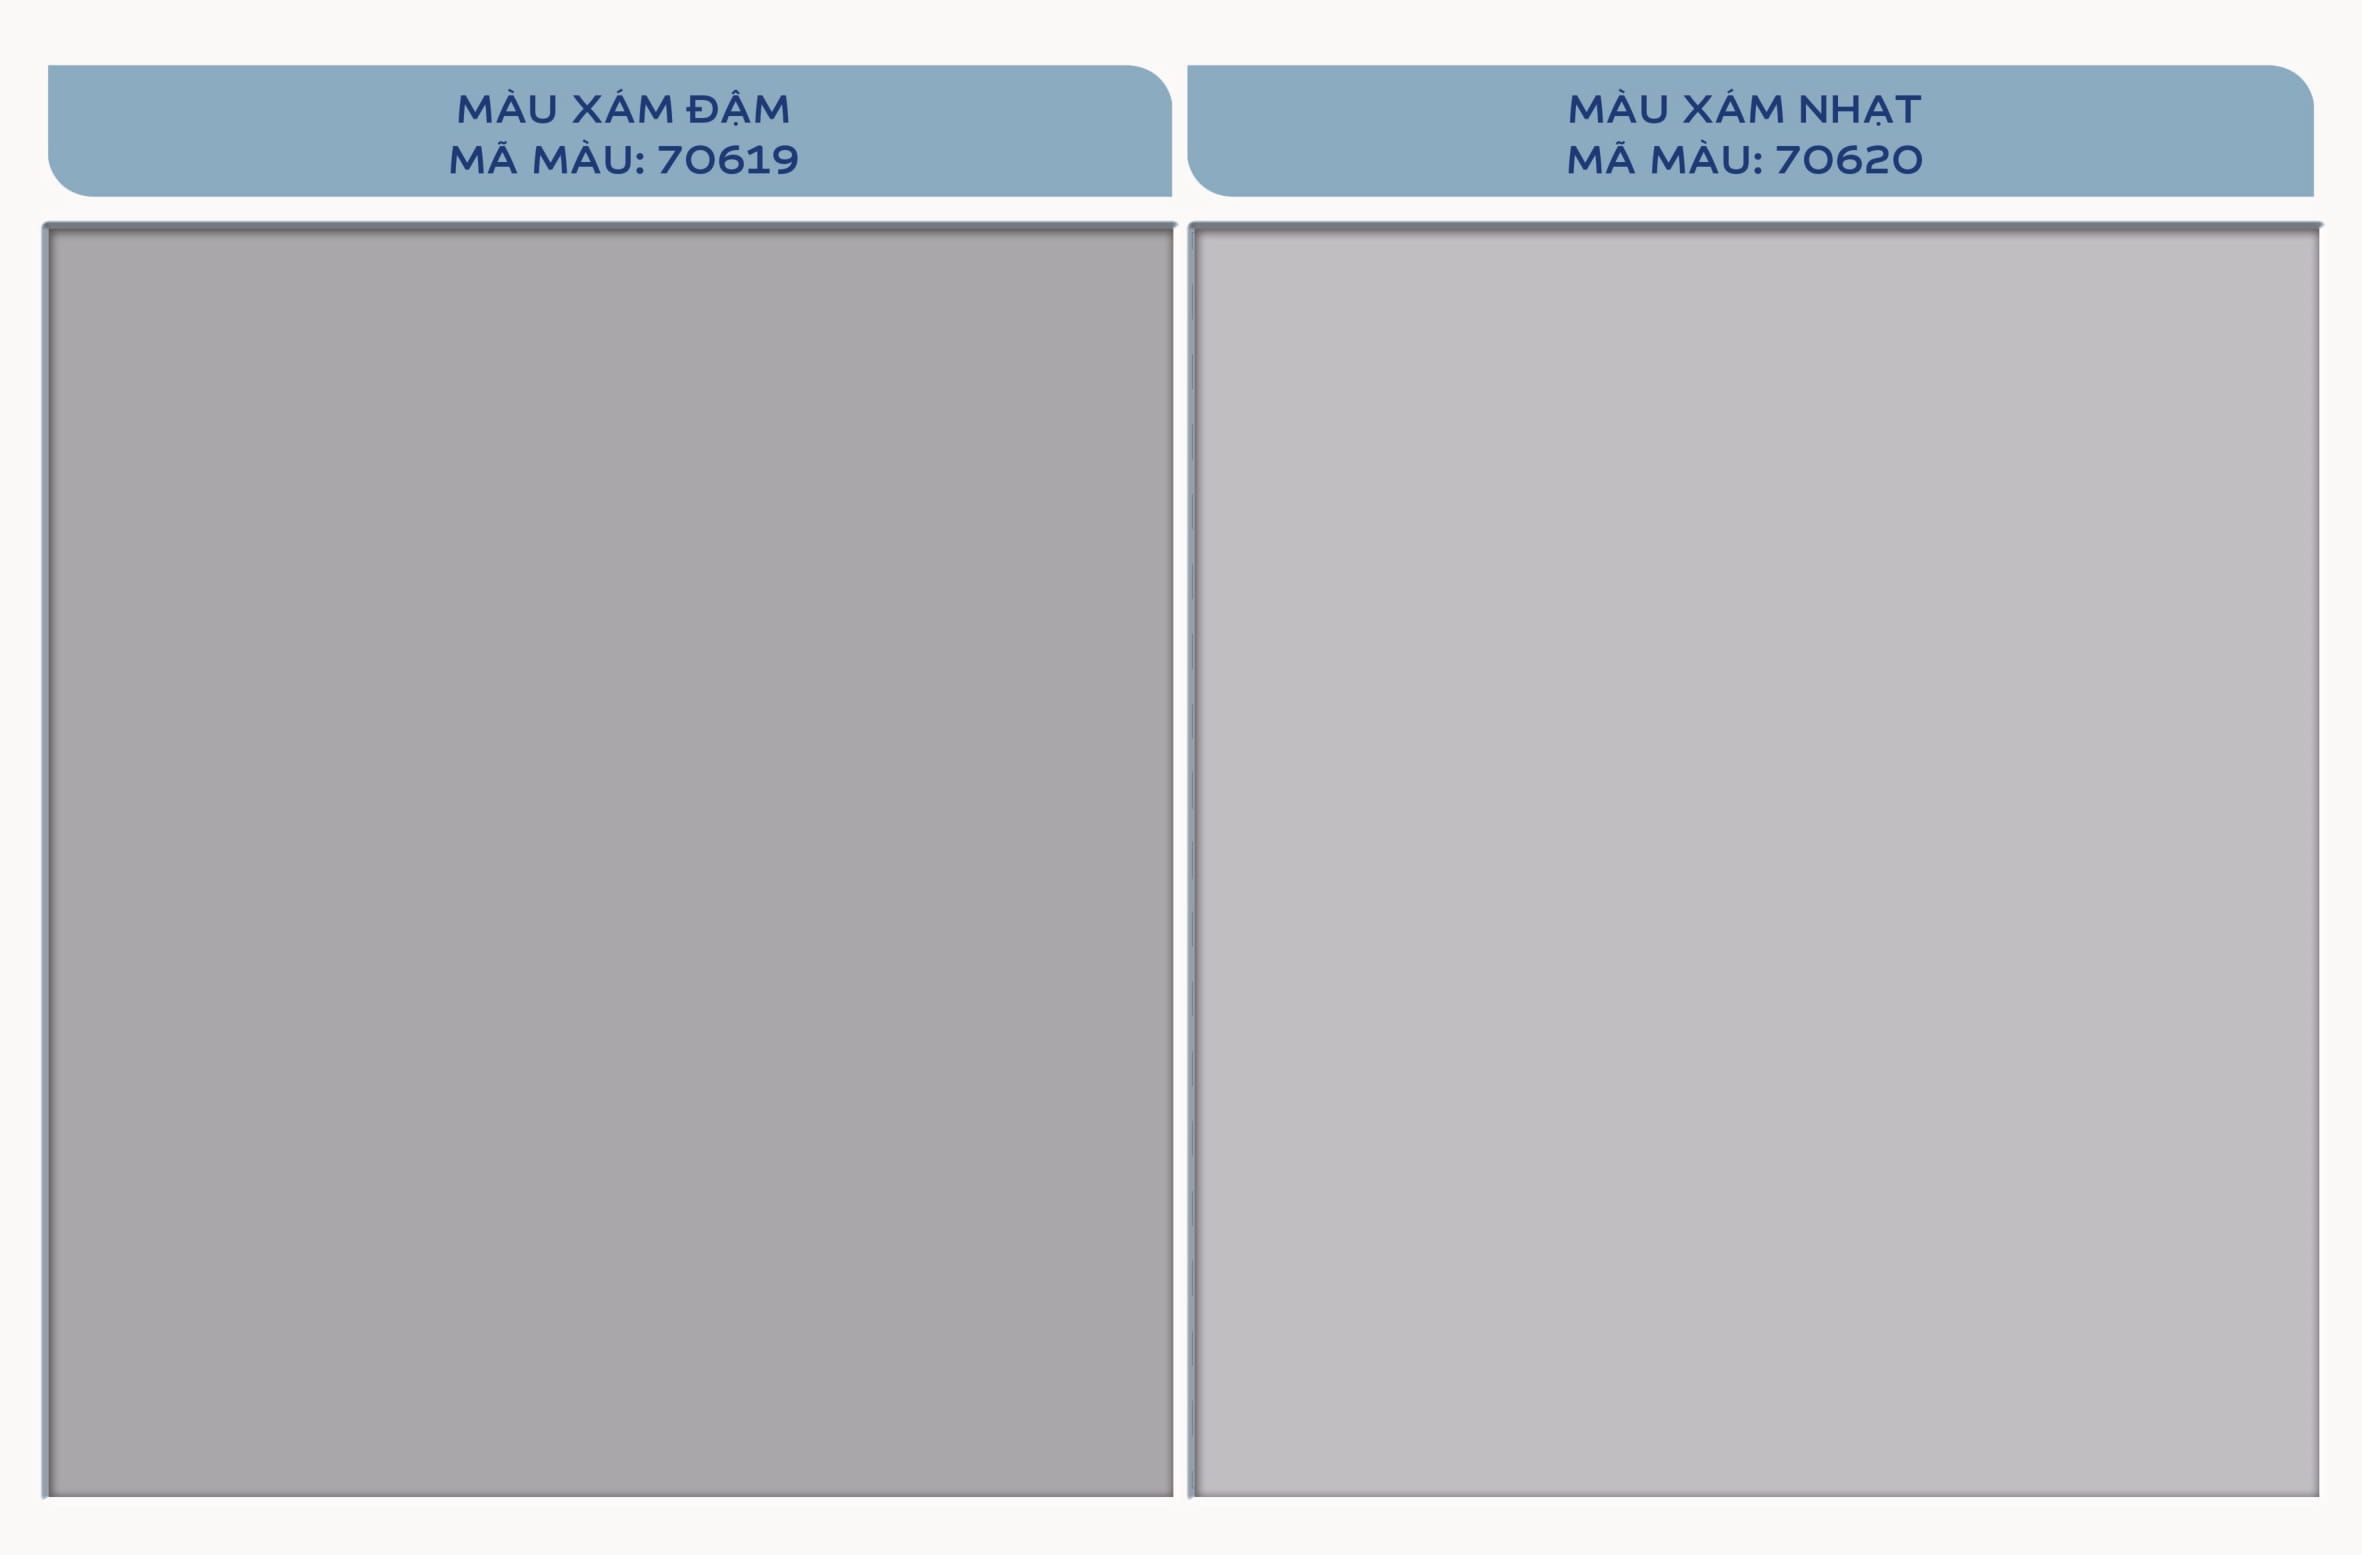 Lưu trữ bảng màu sẽ giúp bạn dễ dàng tìm được tất cả các tông màu mà bạn thích. Đến với Dulux, bạn sẽ được sở hữu nhiều bảng màu sơn đa dạng và phong phú, rất thuận tiện cho việc lựa chọn và tạo nên không gian sống hoàn hảo.